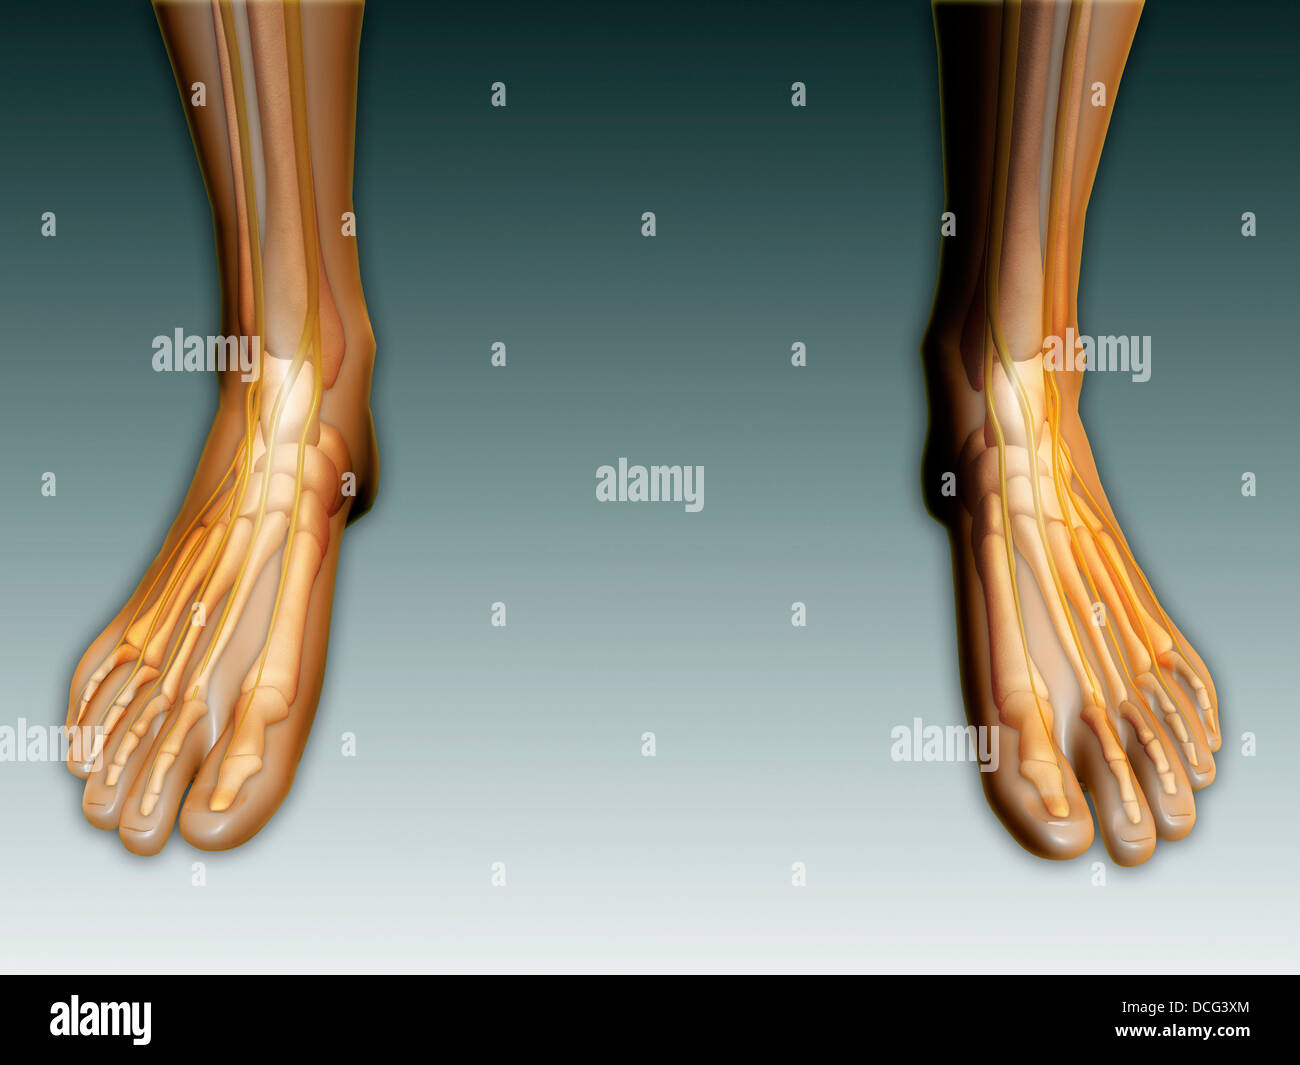 Immagine concettuale umana di gambe e piedi con il sistema nervoso. Foto Stock